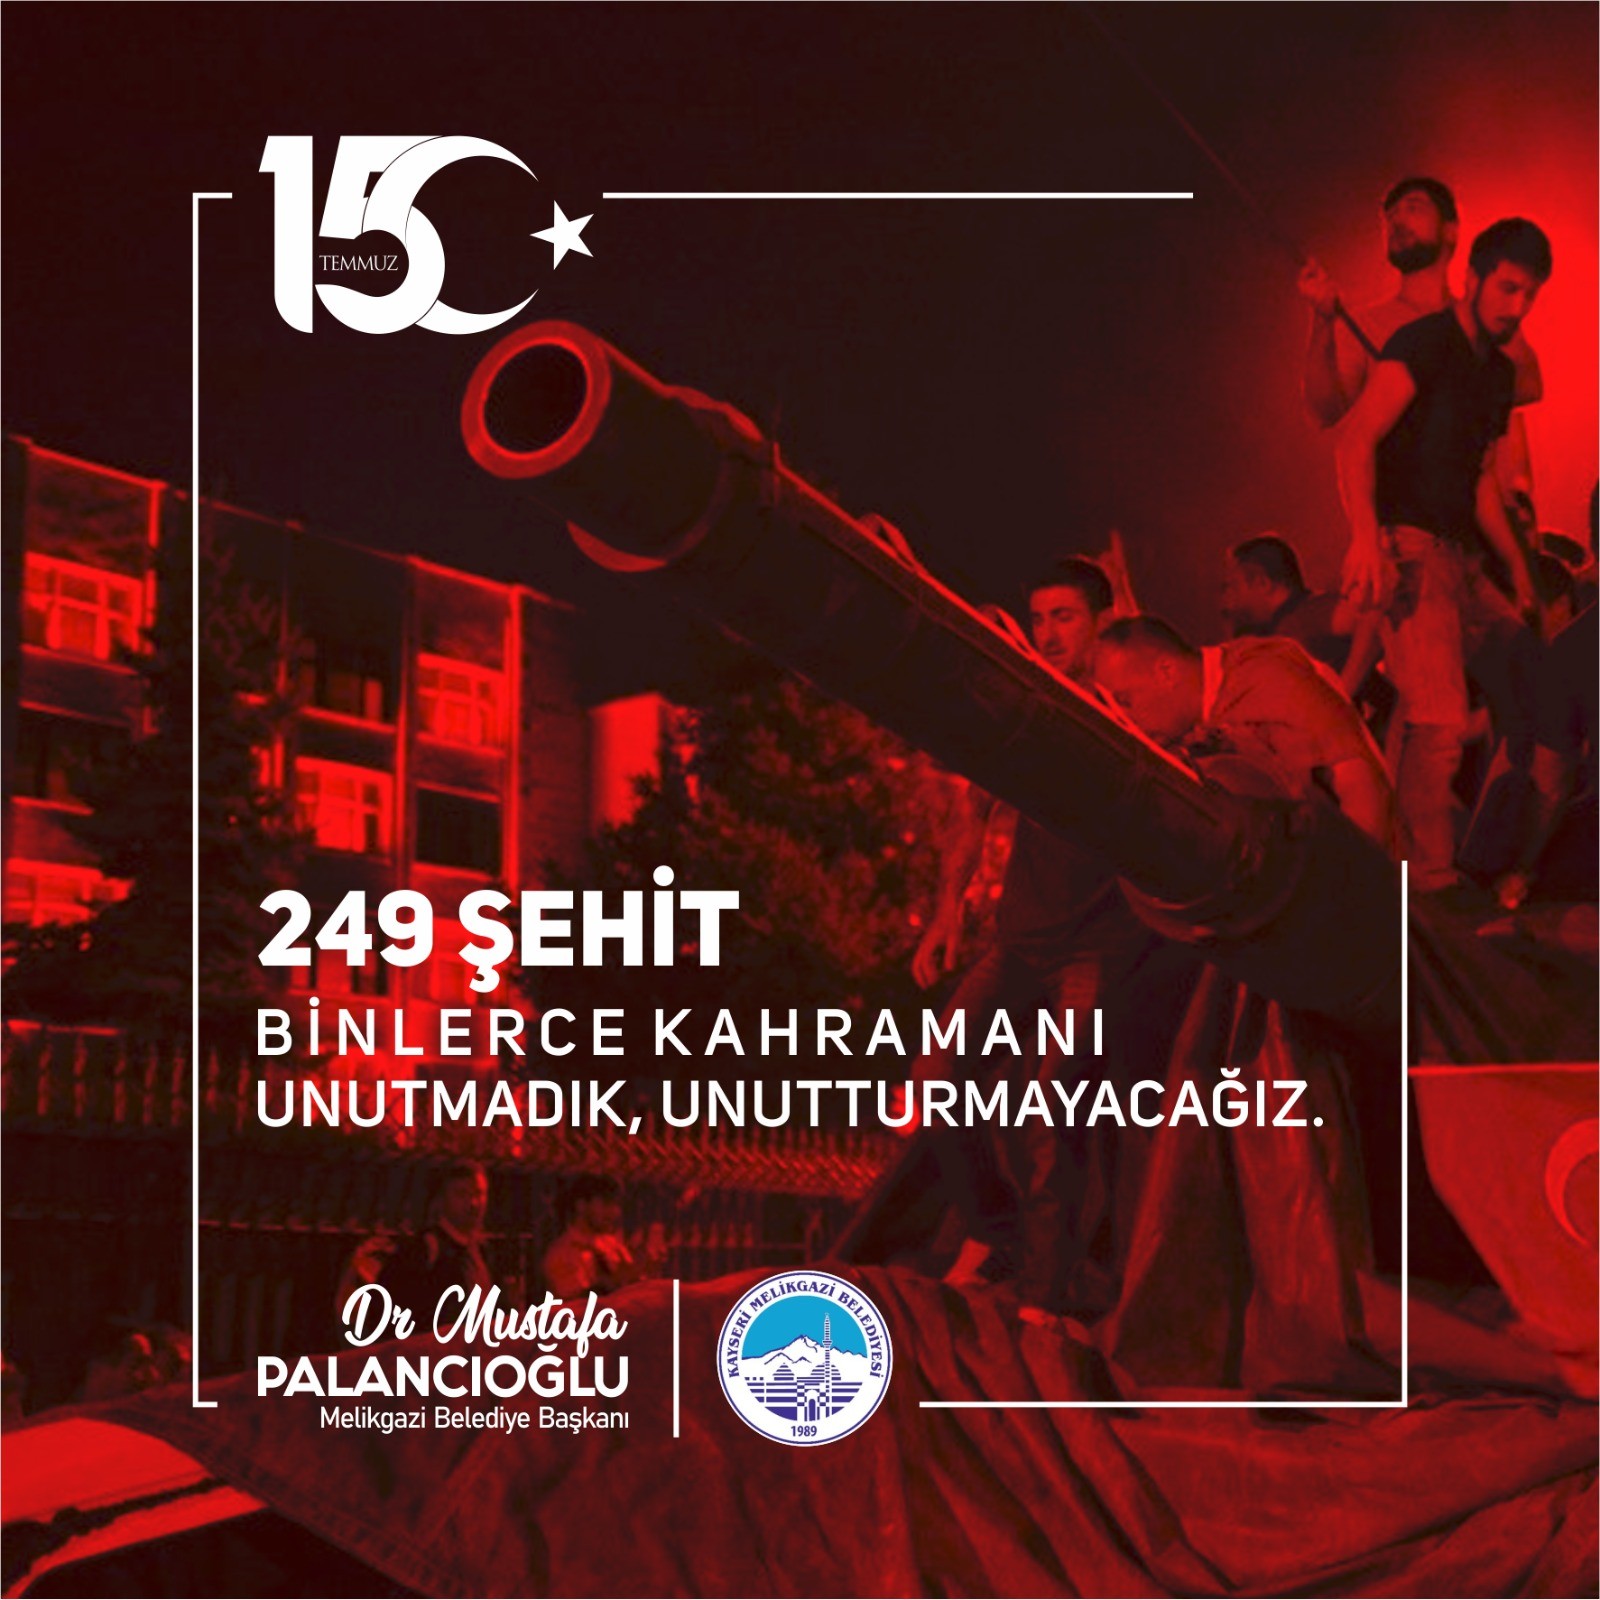 Başkan Palancıoğlu: “15 Temmuz, tarihin en büyük demokrasi derslerinden biridir”